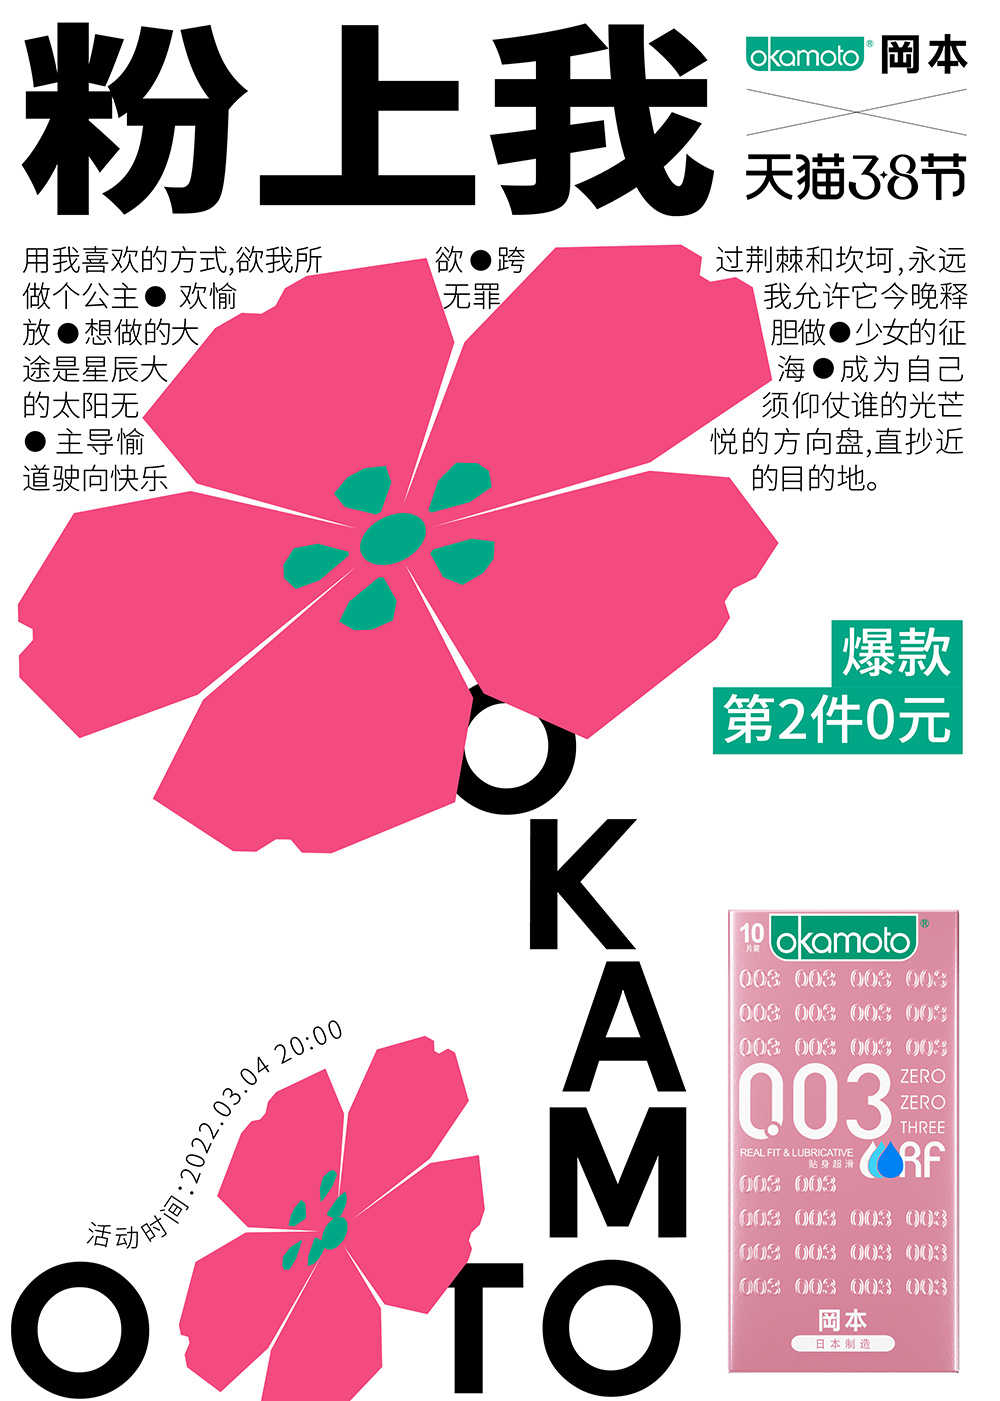 18张岡本创意产品海报设计!